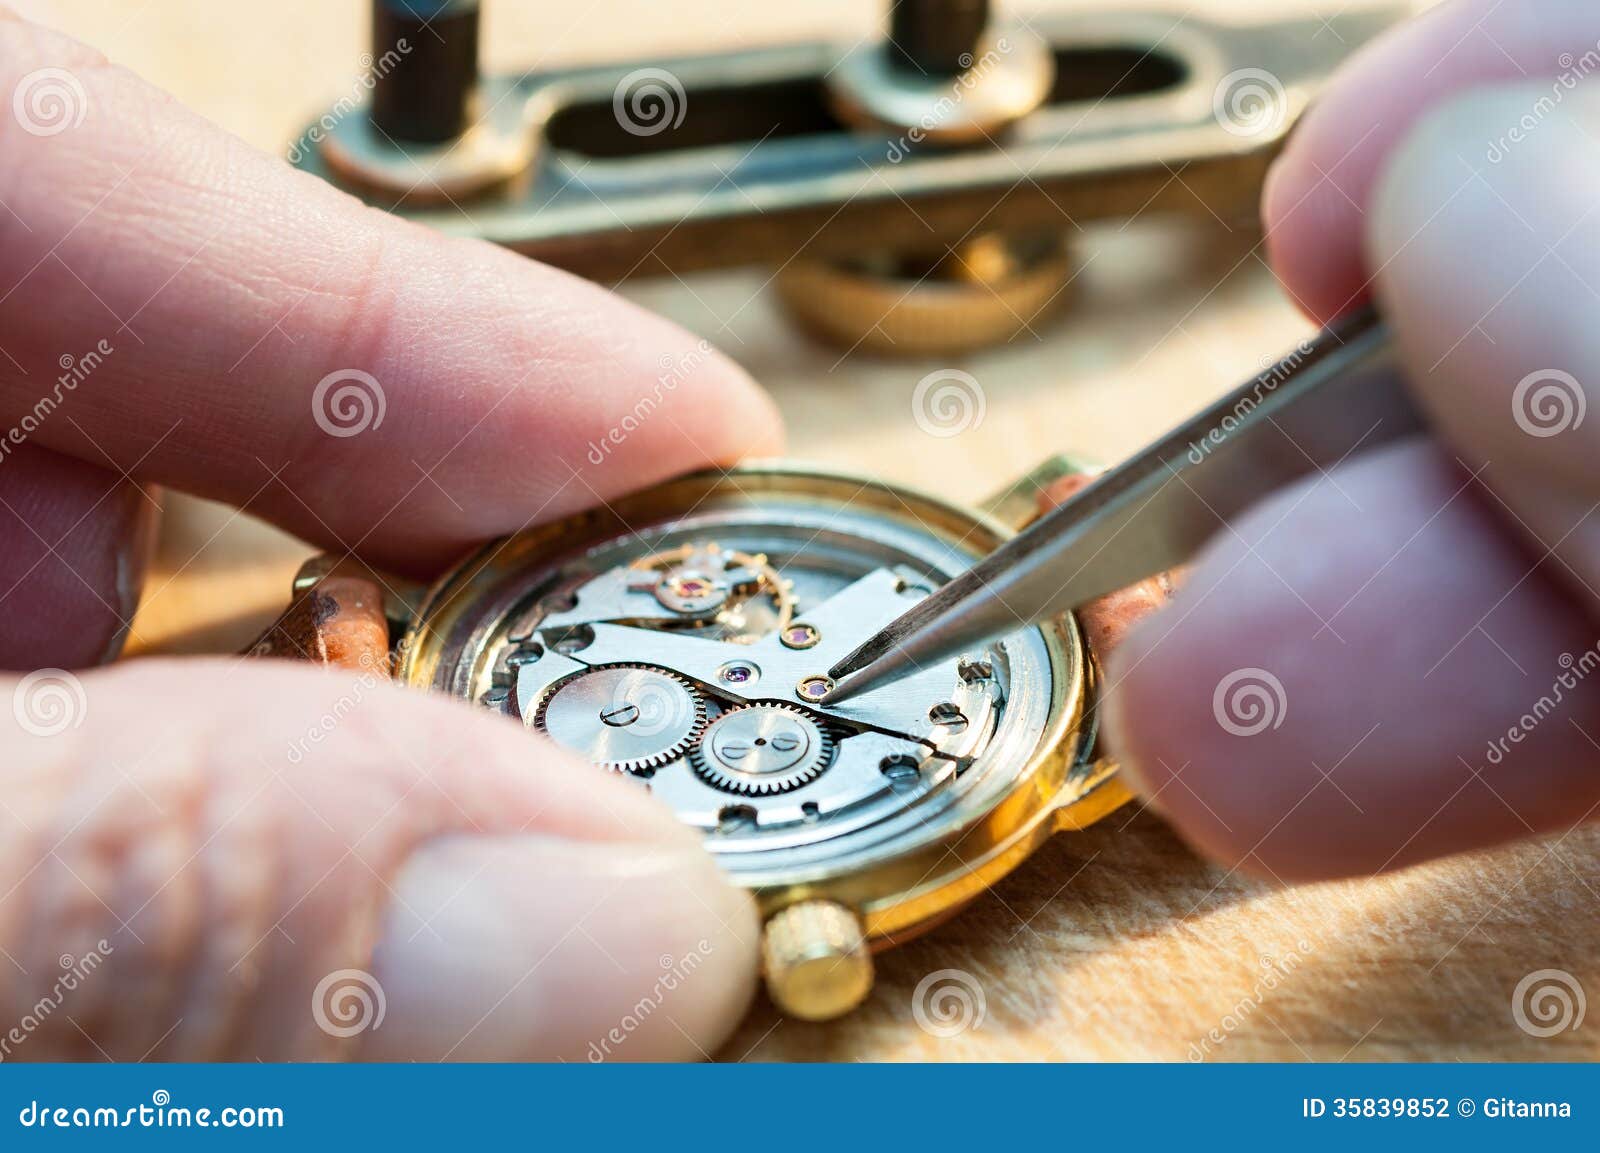 Фирма занимается ремонтом часов приобретение комплектующих. Старинные приспособления для ремонта часов. Часовой мастер Омск. Часовщик реклама. Ремонт часов.